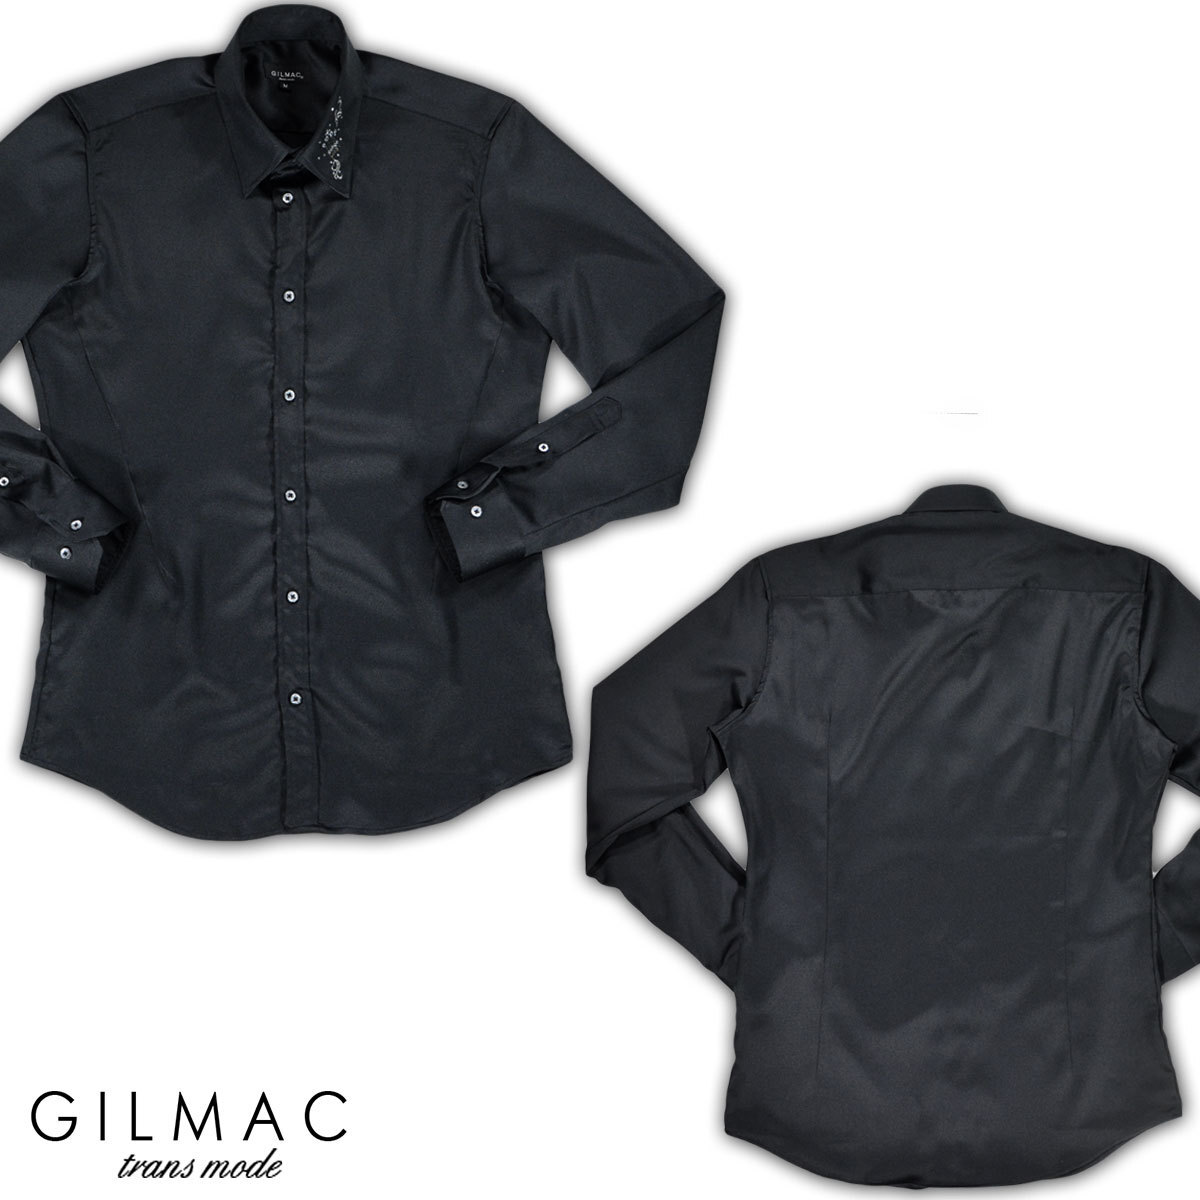 36741-2 GILMAC イタリアンカラー クラウン王冠 襟ラインストーン 長袖サテンドレスシャツ メンズ(ブラック黒) S スキッパー_画像4